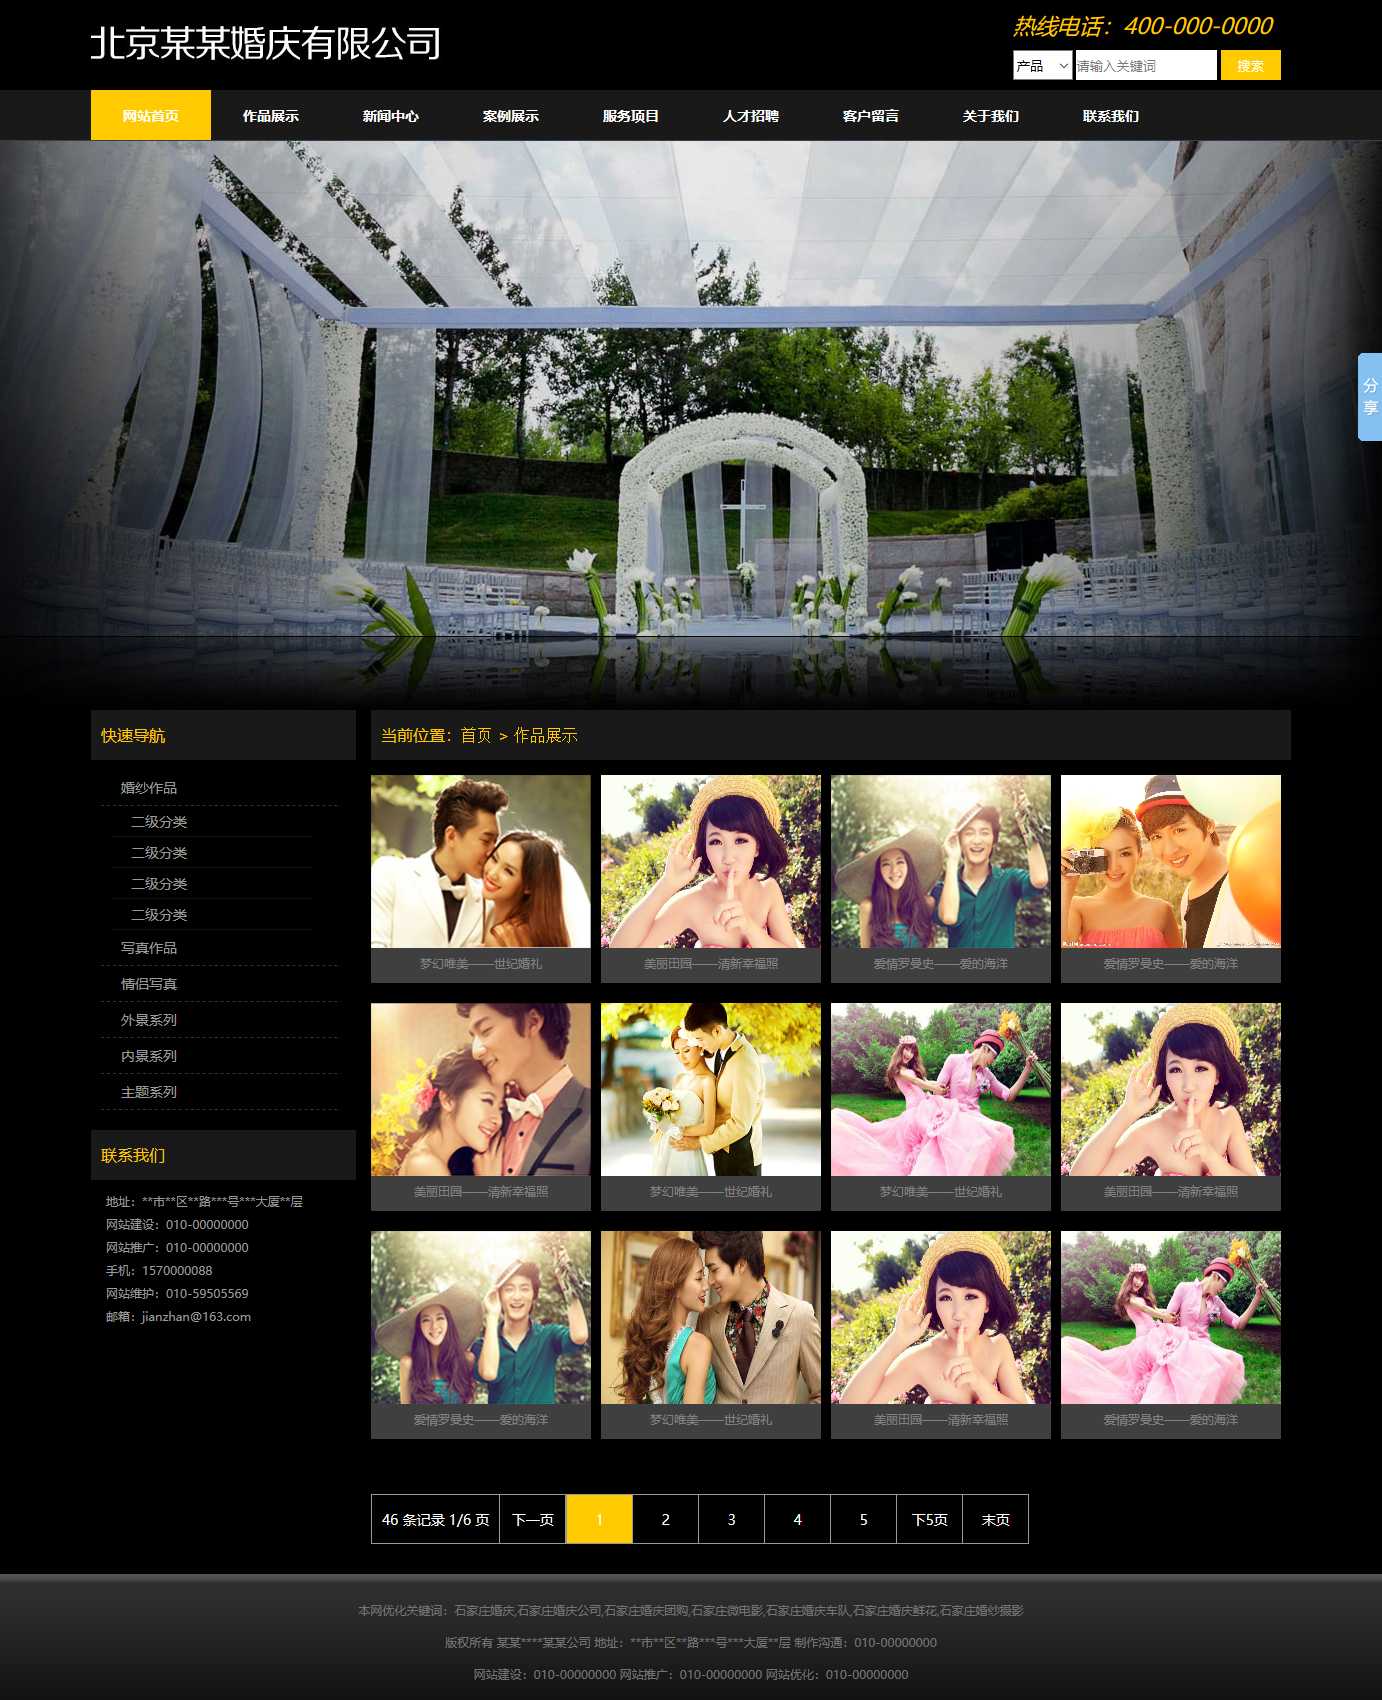 婚纱摄影,婚庆公司网站图片列表效果图